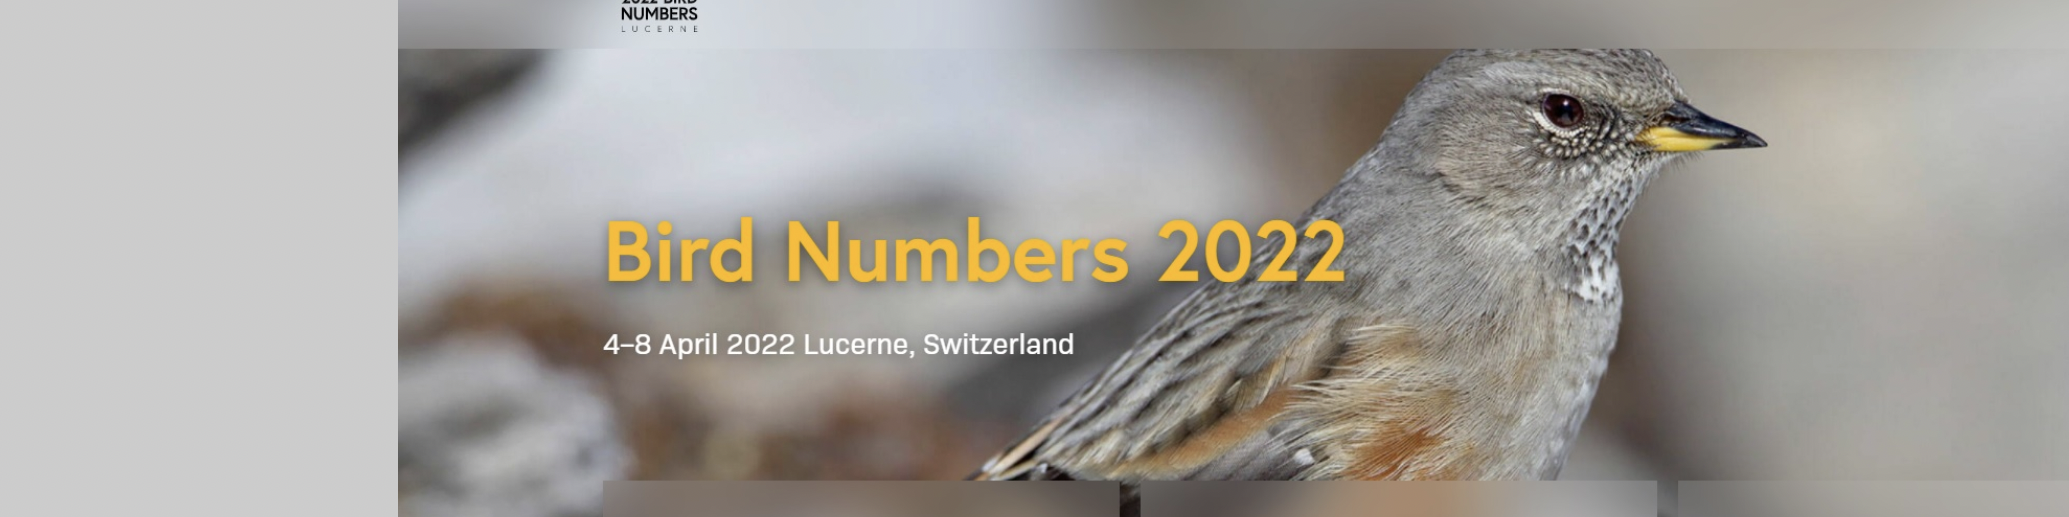 Bird Numbers 2022 Poster